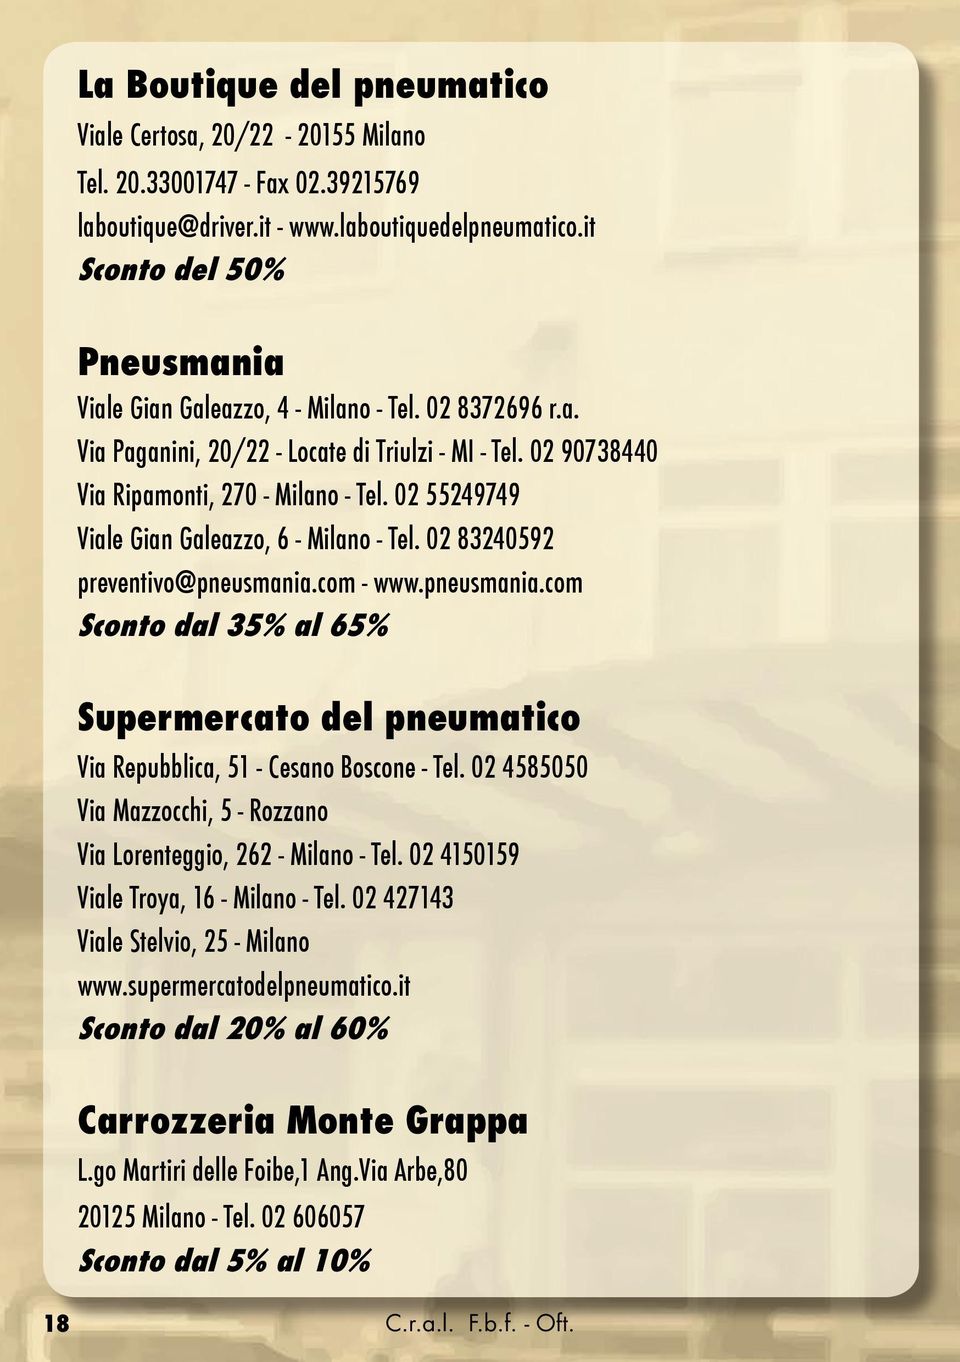 02 55249749 Viale Gian Galeazzo, 6 - Milano - Tel. 02 83240592 preventivo@pneusmania.com - www.pneusmania.com Sconto dal 35% al 65% Supermercato del pneumatico Via Repubblica, 51 - Cesano Boscone - Tel.